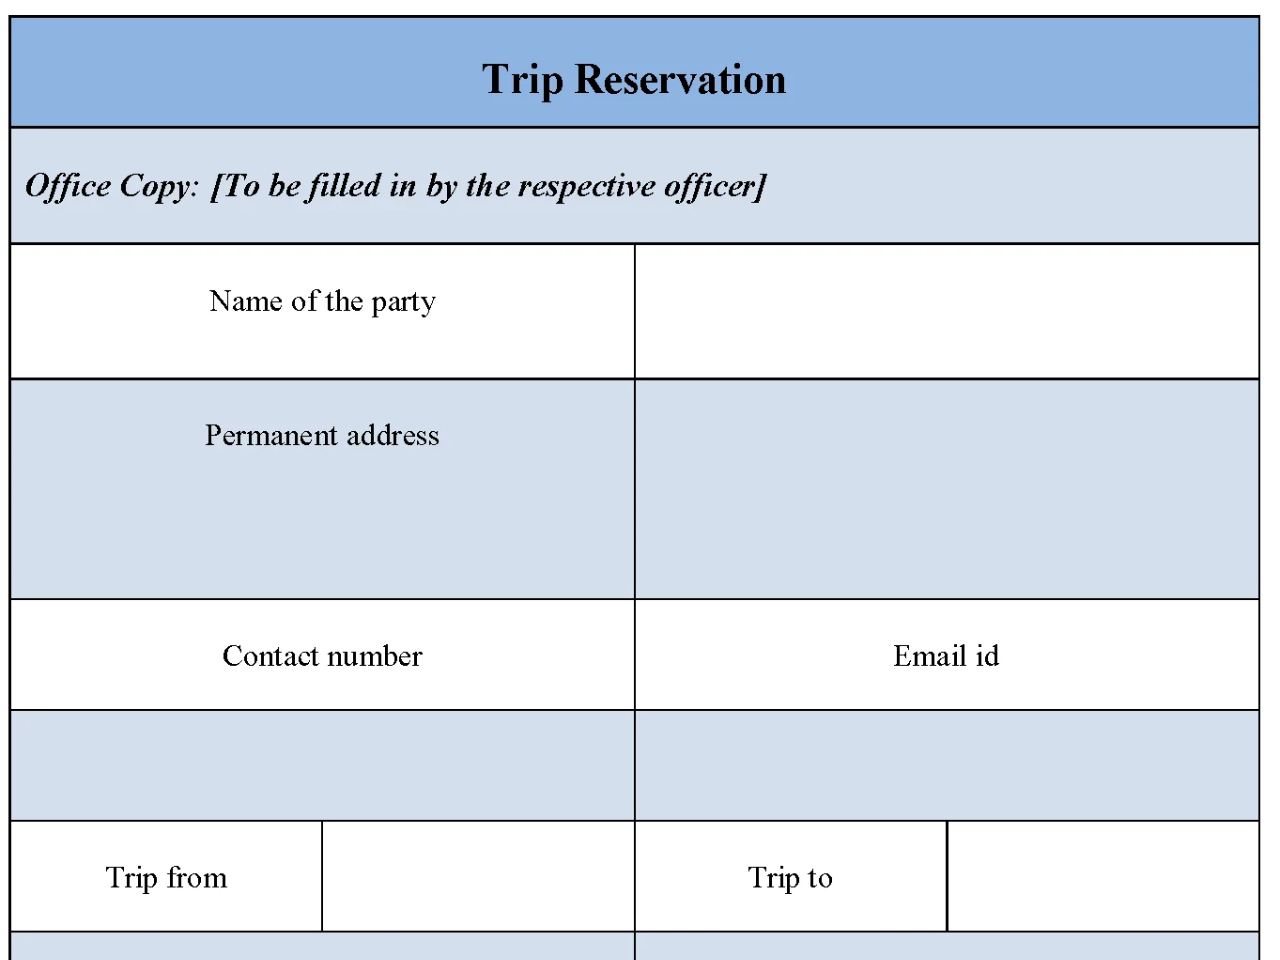 Trip Reservation Form